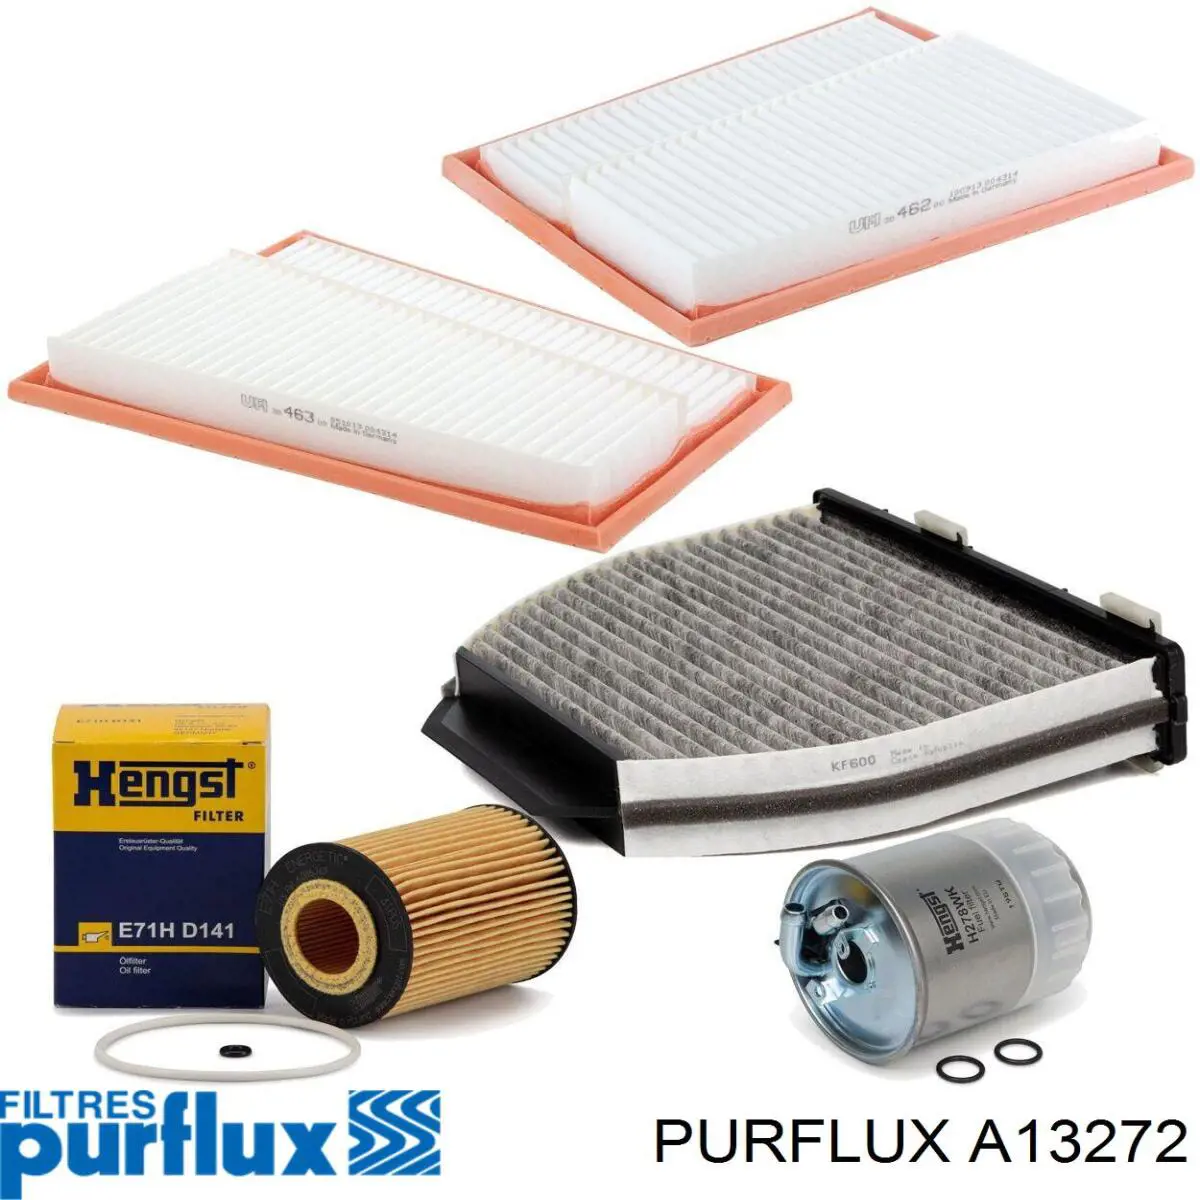 A1327-2 Purflux filtro de aire